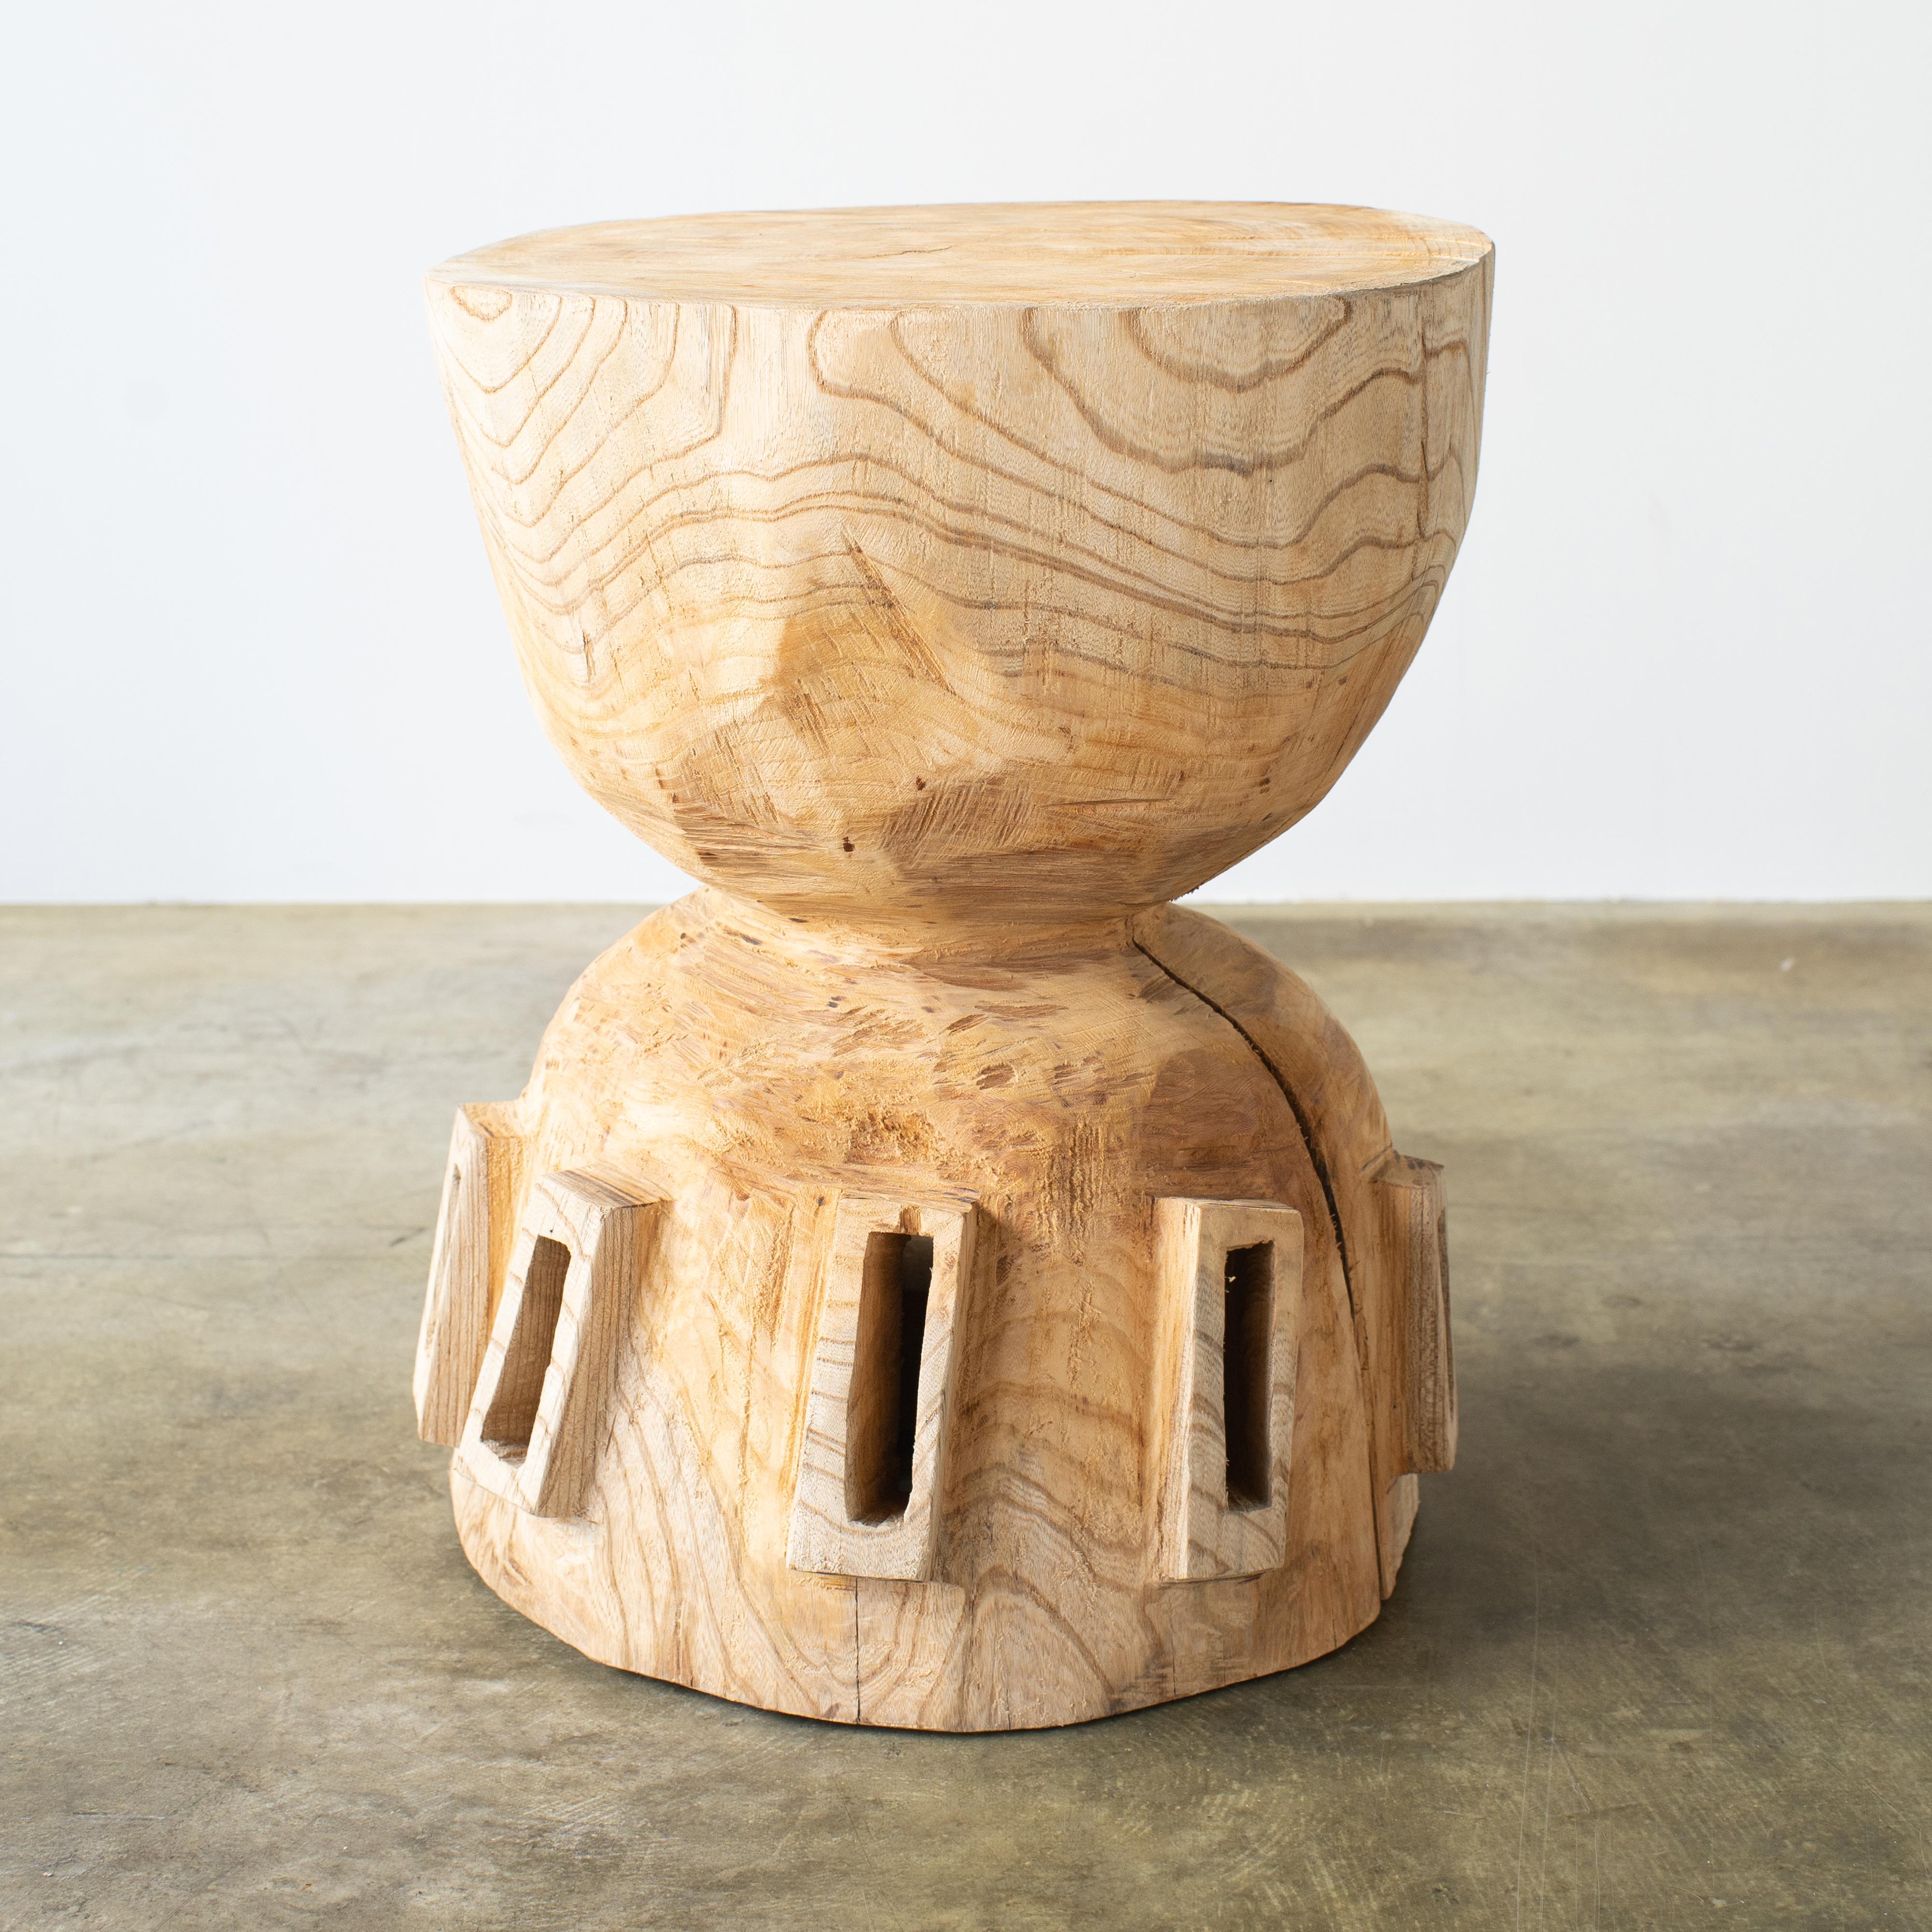 Nom : Vaisseau spatial
Tabouret sculptural de Hiroyuki Nishimura et meubles sculptés en zone
Matériau : zelkova
Cette œuvre est taillée dans le bois avec des sortes de tronçonneuses.
La plupart des bois utilisés pour les œuvres de Nishimura ne